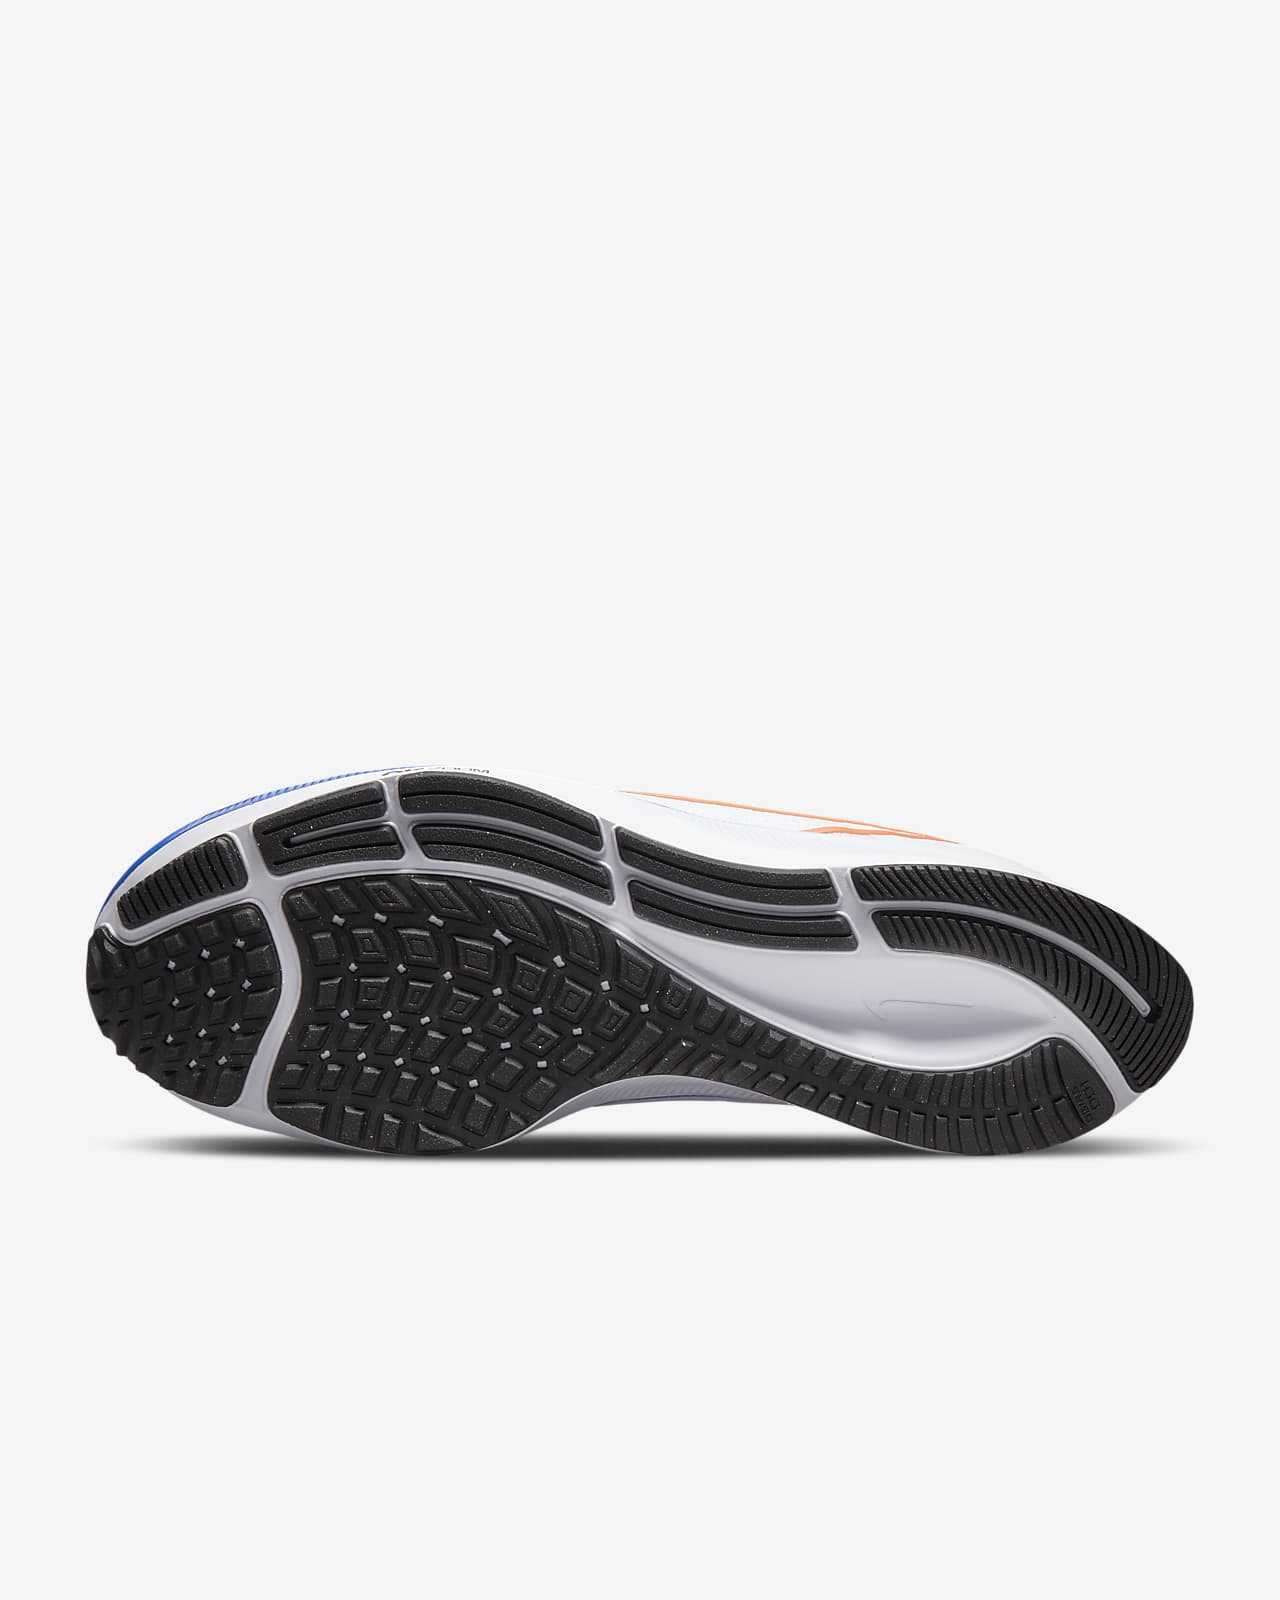 موقع سلفردج Nike Air Zoom Pegasus 38 Men's Road Running Shoes موقع سلفردج